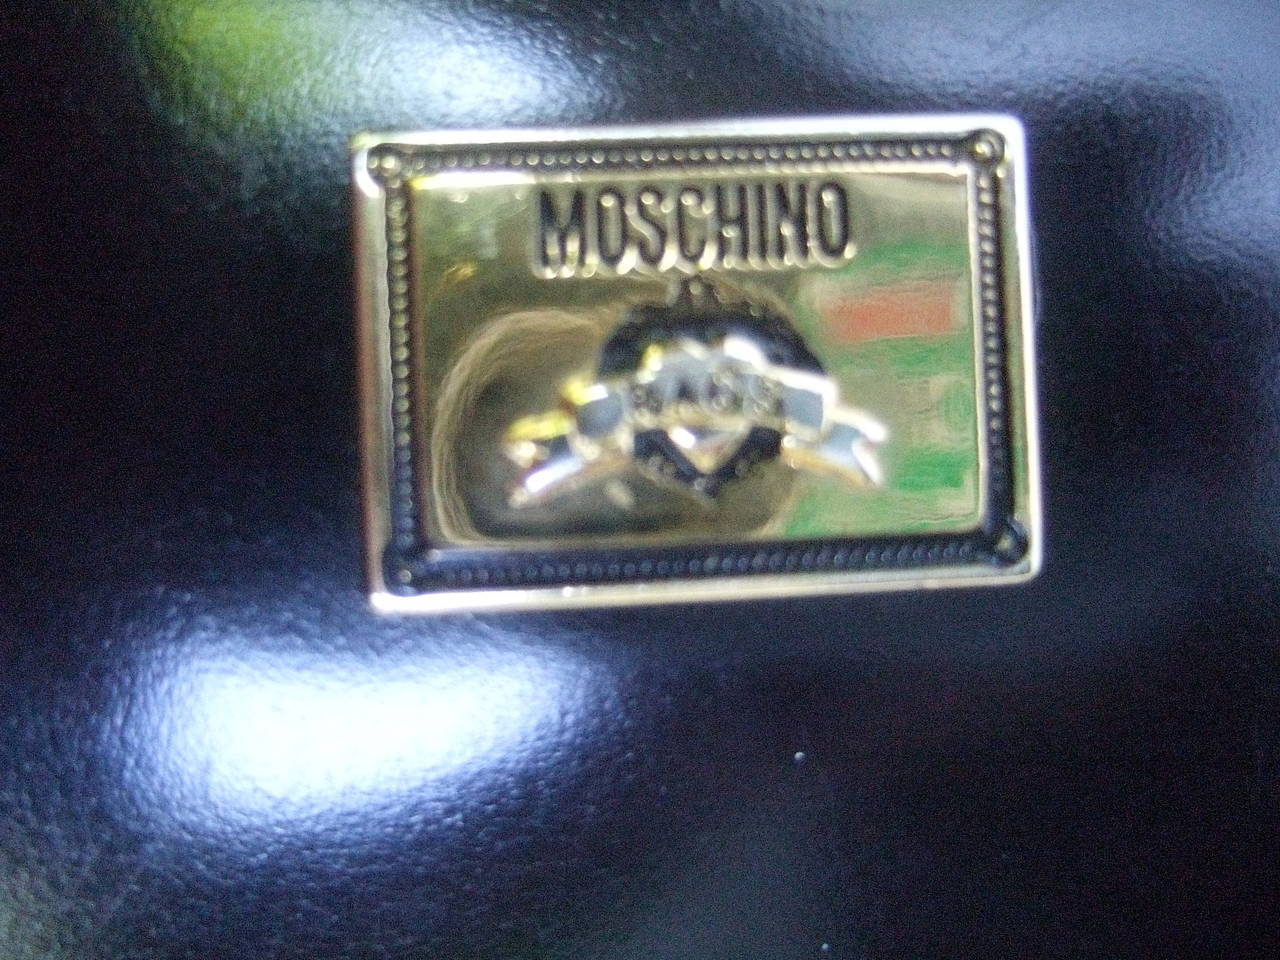 Moschino Italy Mod Heart Black Waxed Leather Handbag 2